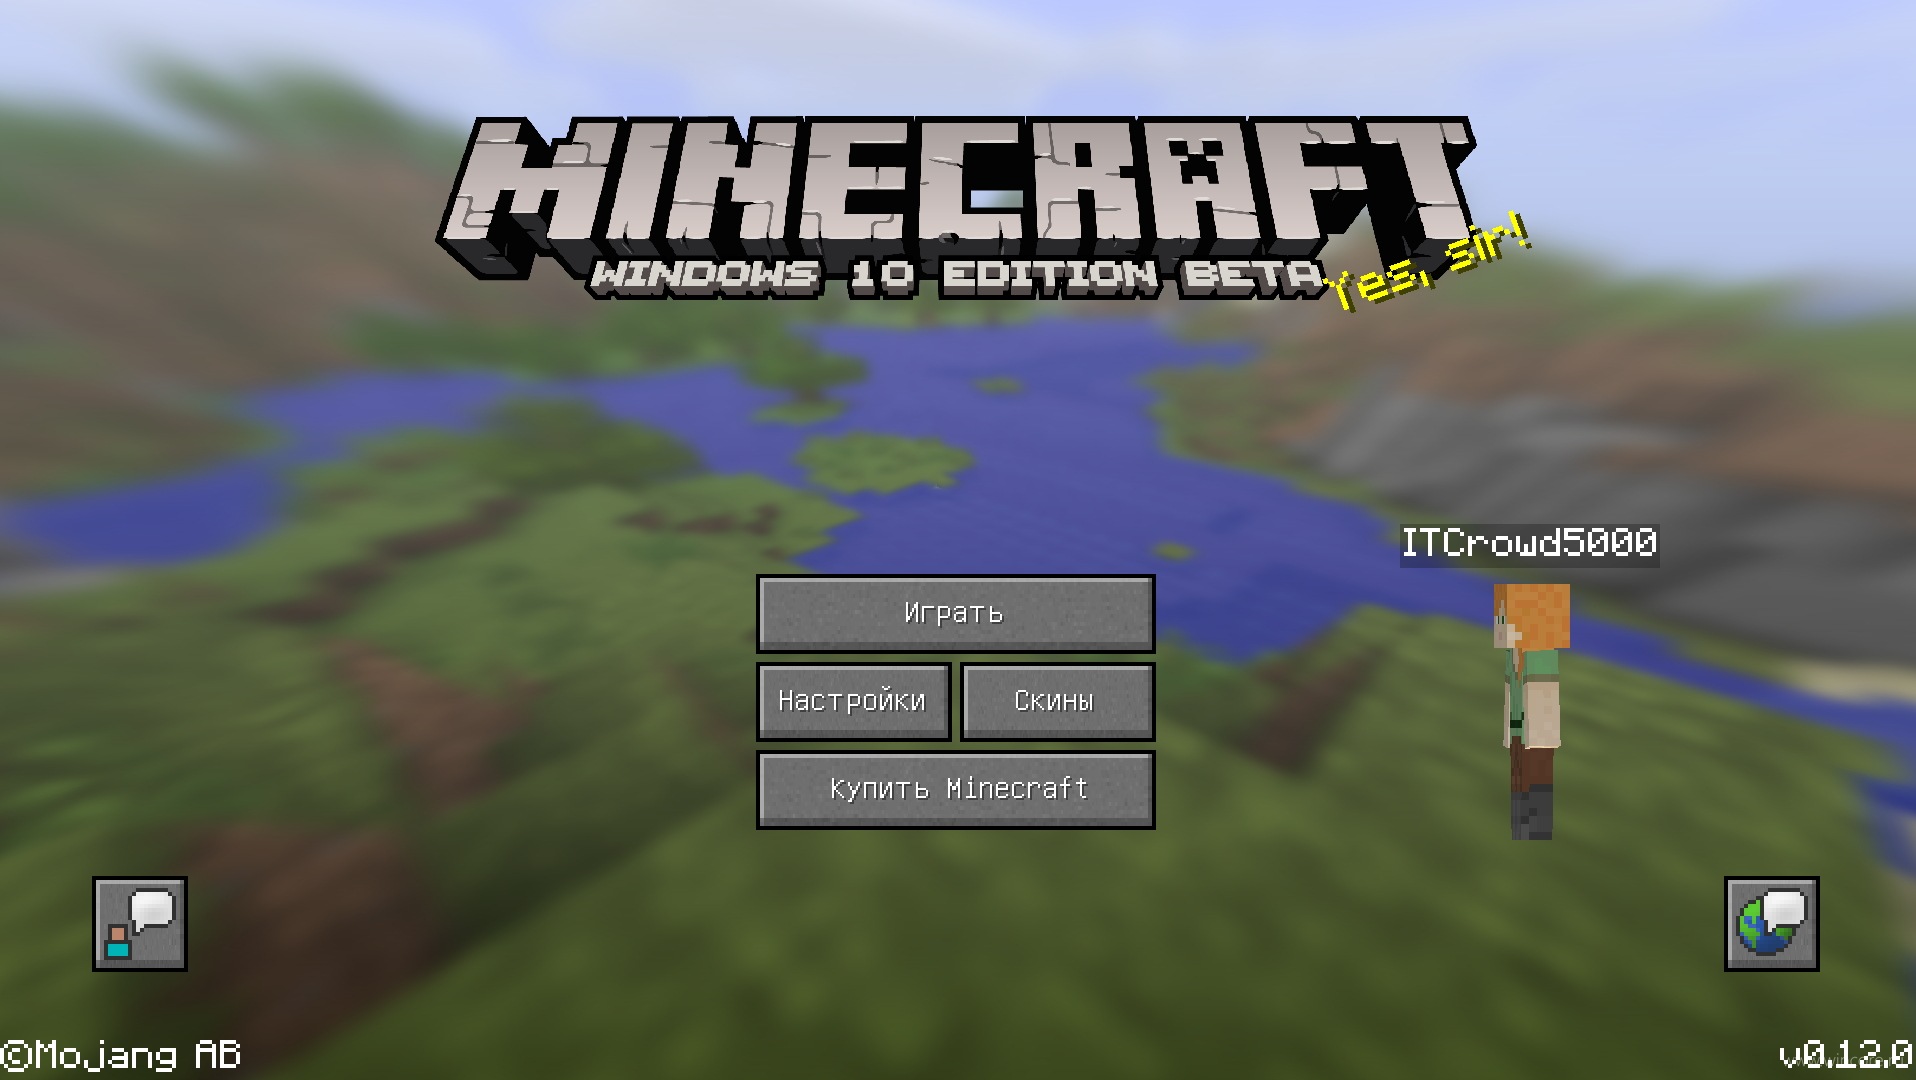 download minecraft windows 10 edition beta